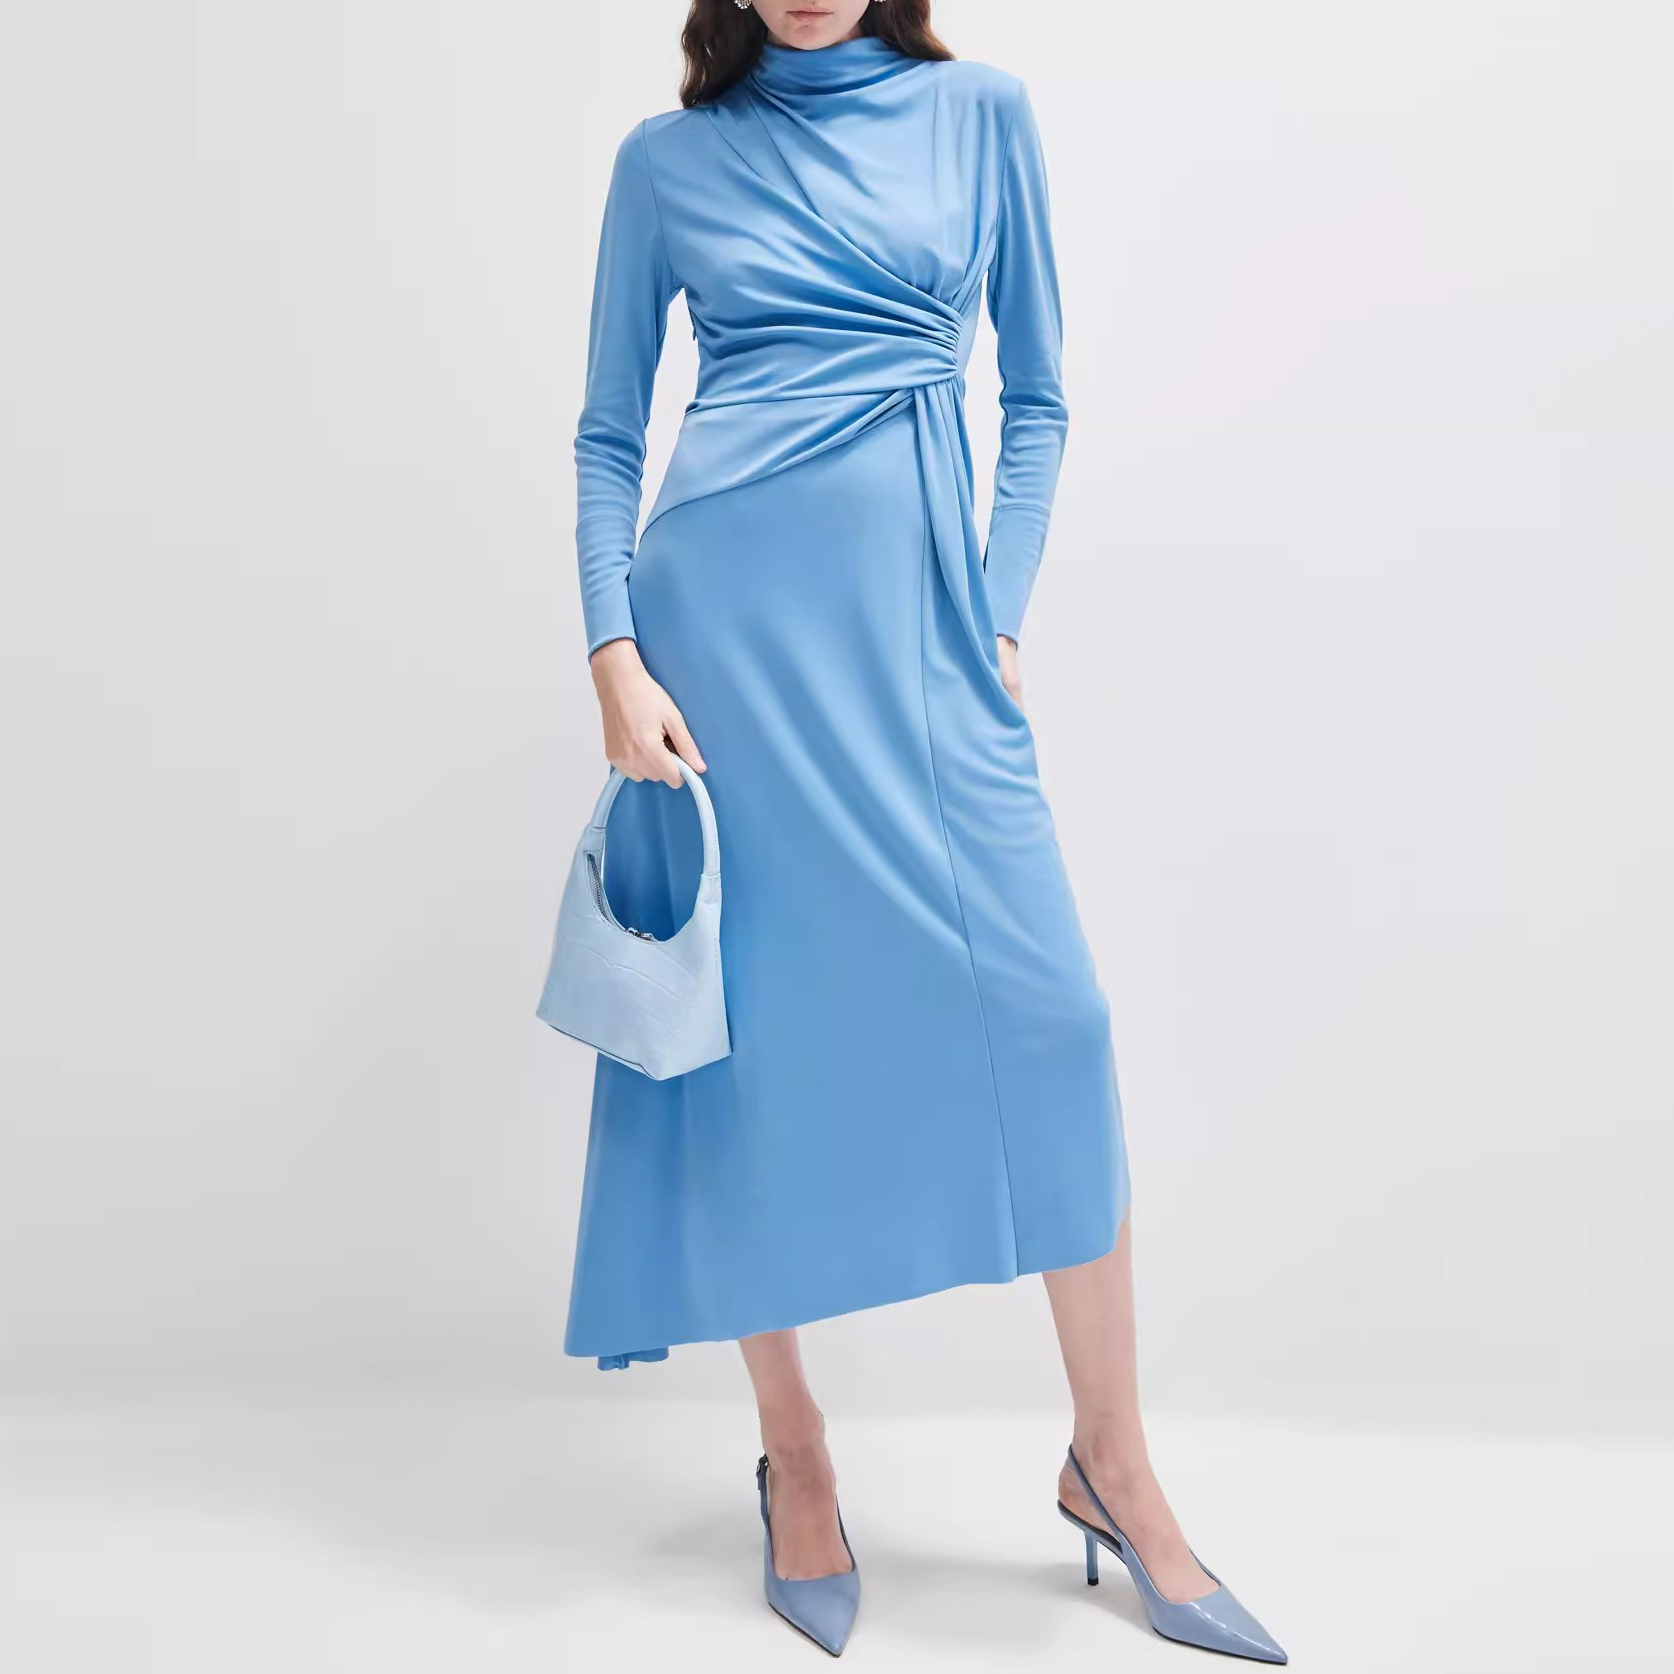 Customised Wrinkled Elegant Dresses Manufacturer